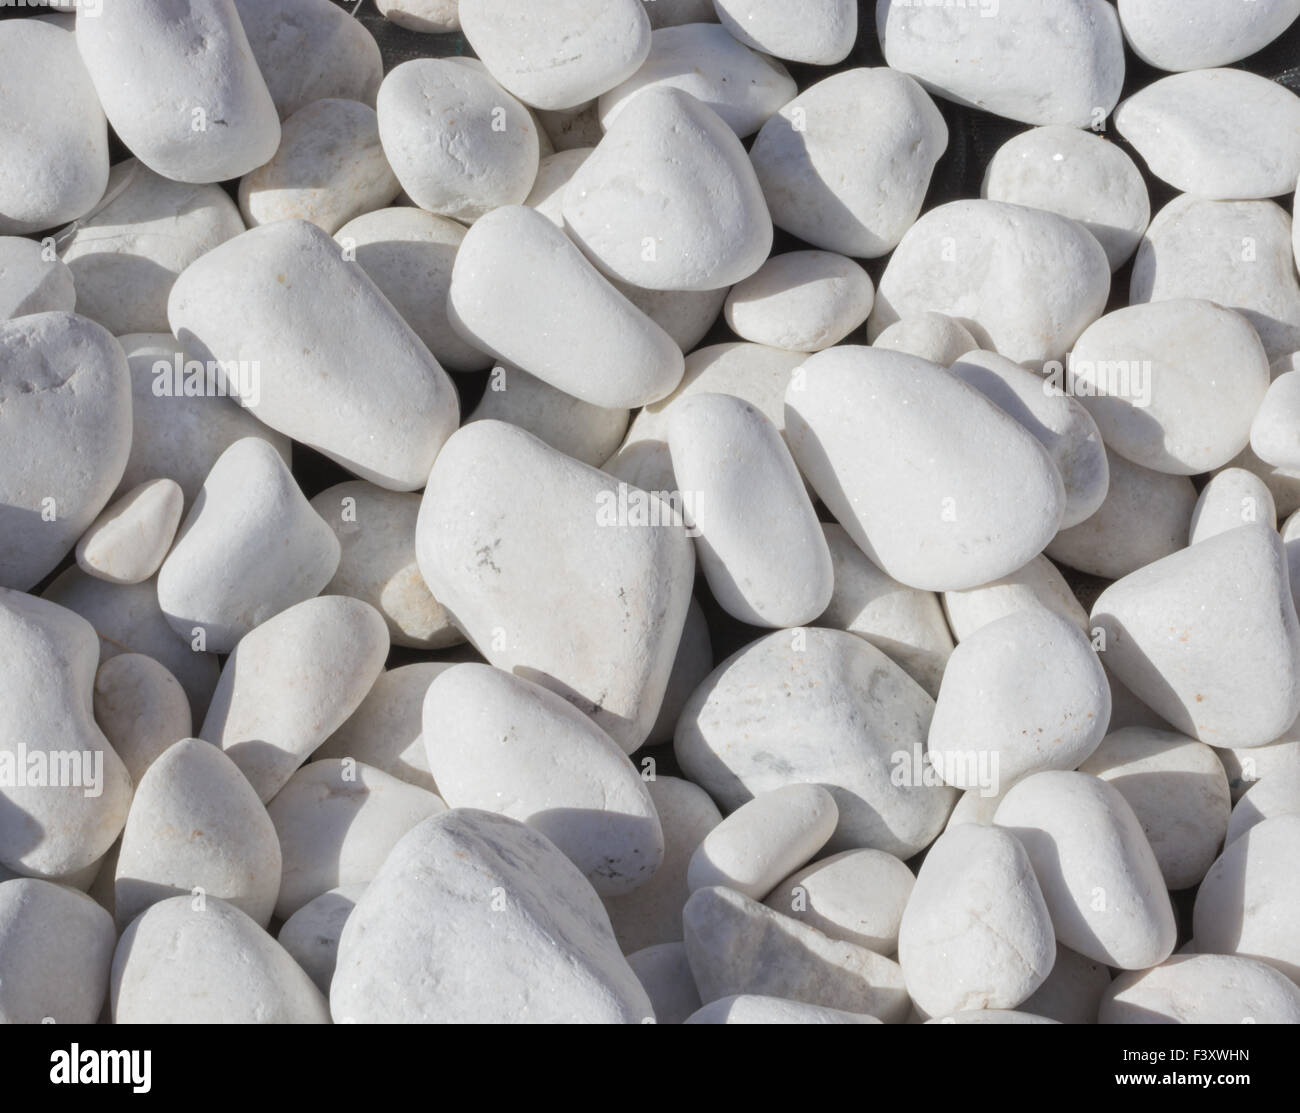 White stones Stock Photo